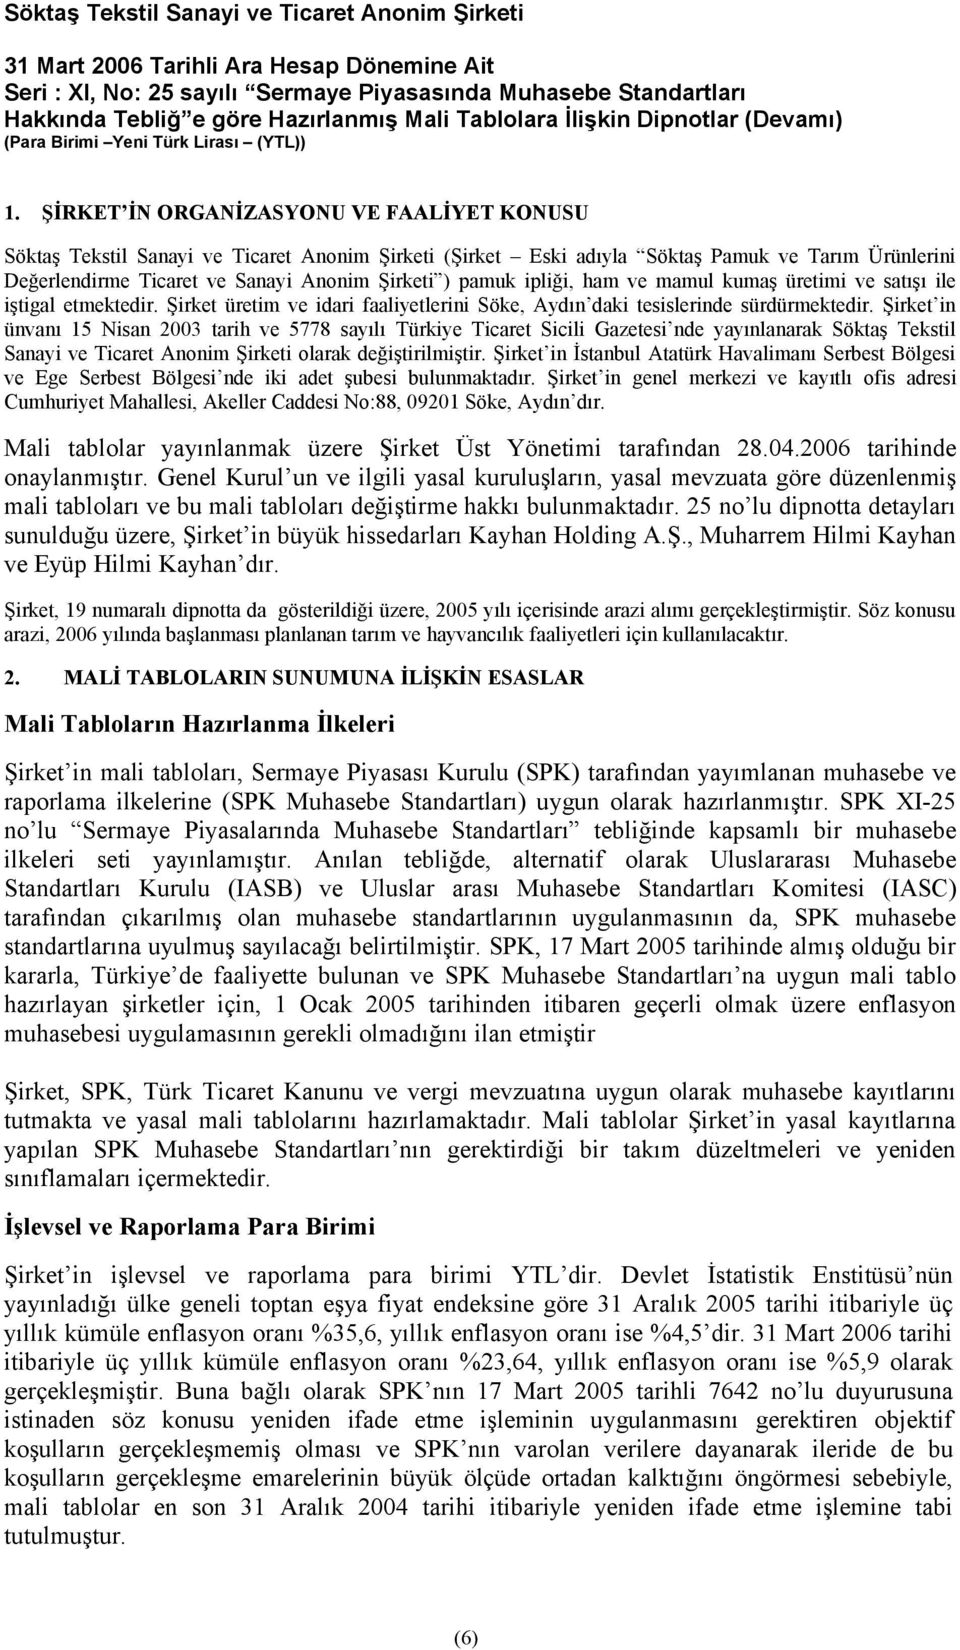 Şirket in ünvanı 15 Nisan 2003 tarih ve 5778 sayılı Türkiye Ticaret Sicili Gazetesi nde yayınlanarak Söktaş Tekstil Sanayi ve Ticaret Anonim Şirketi olarak değiştirilmiştir.